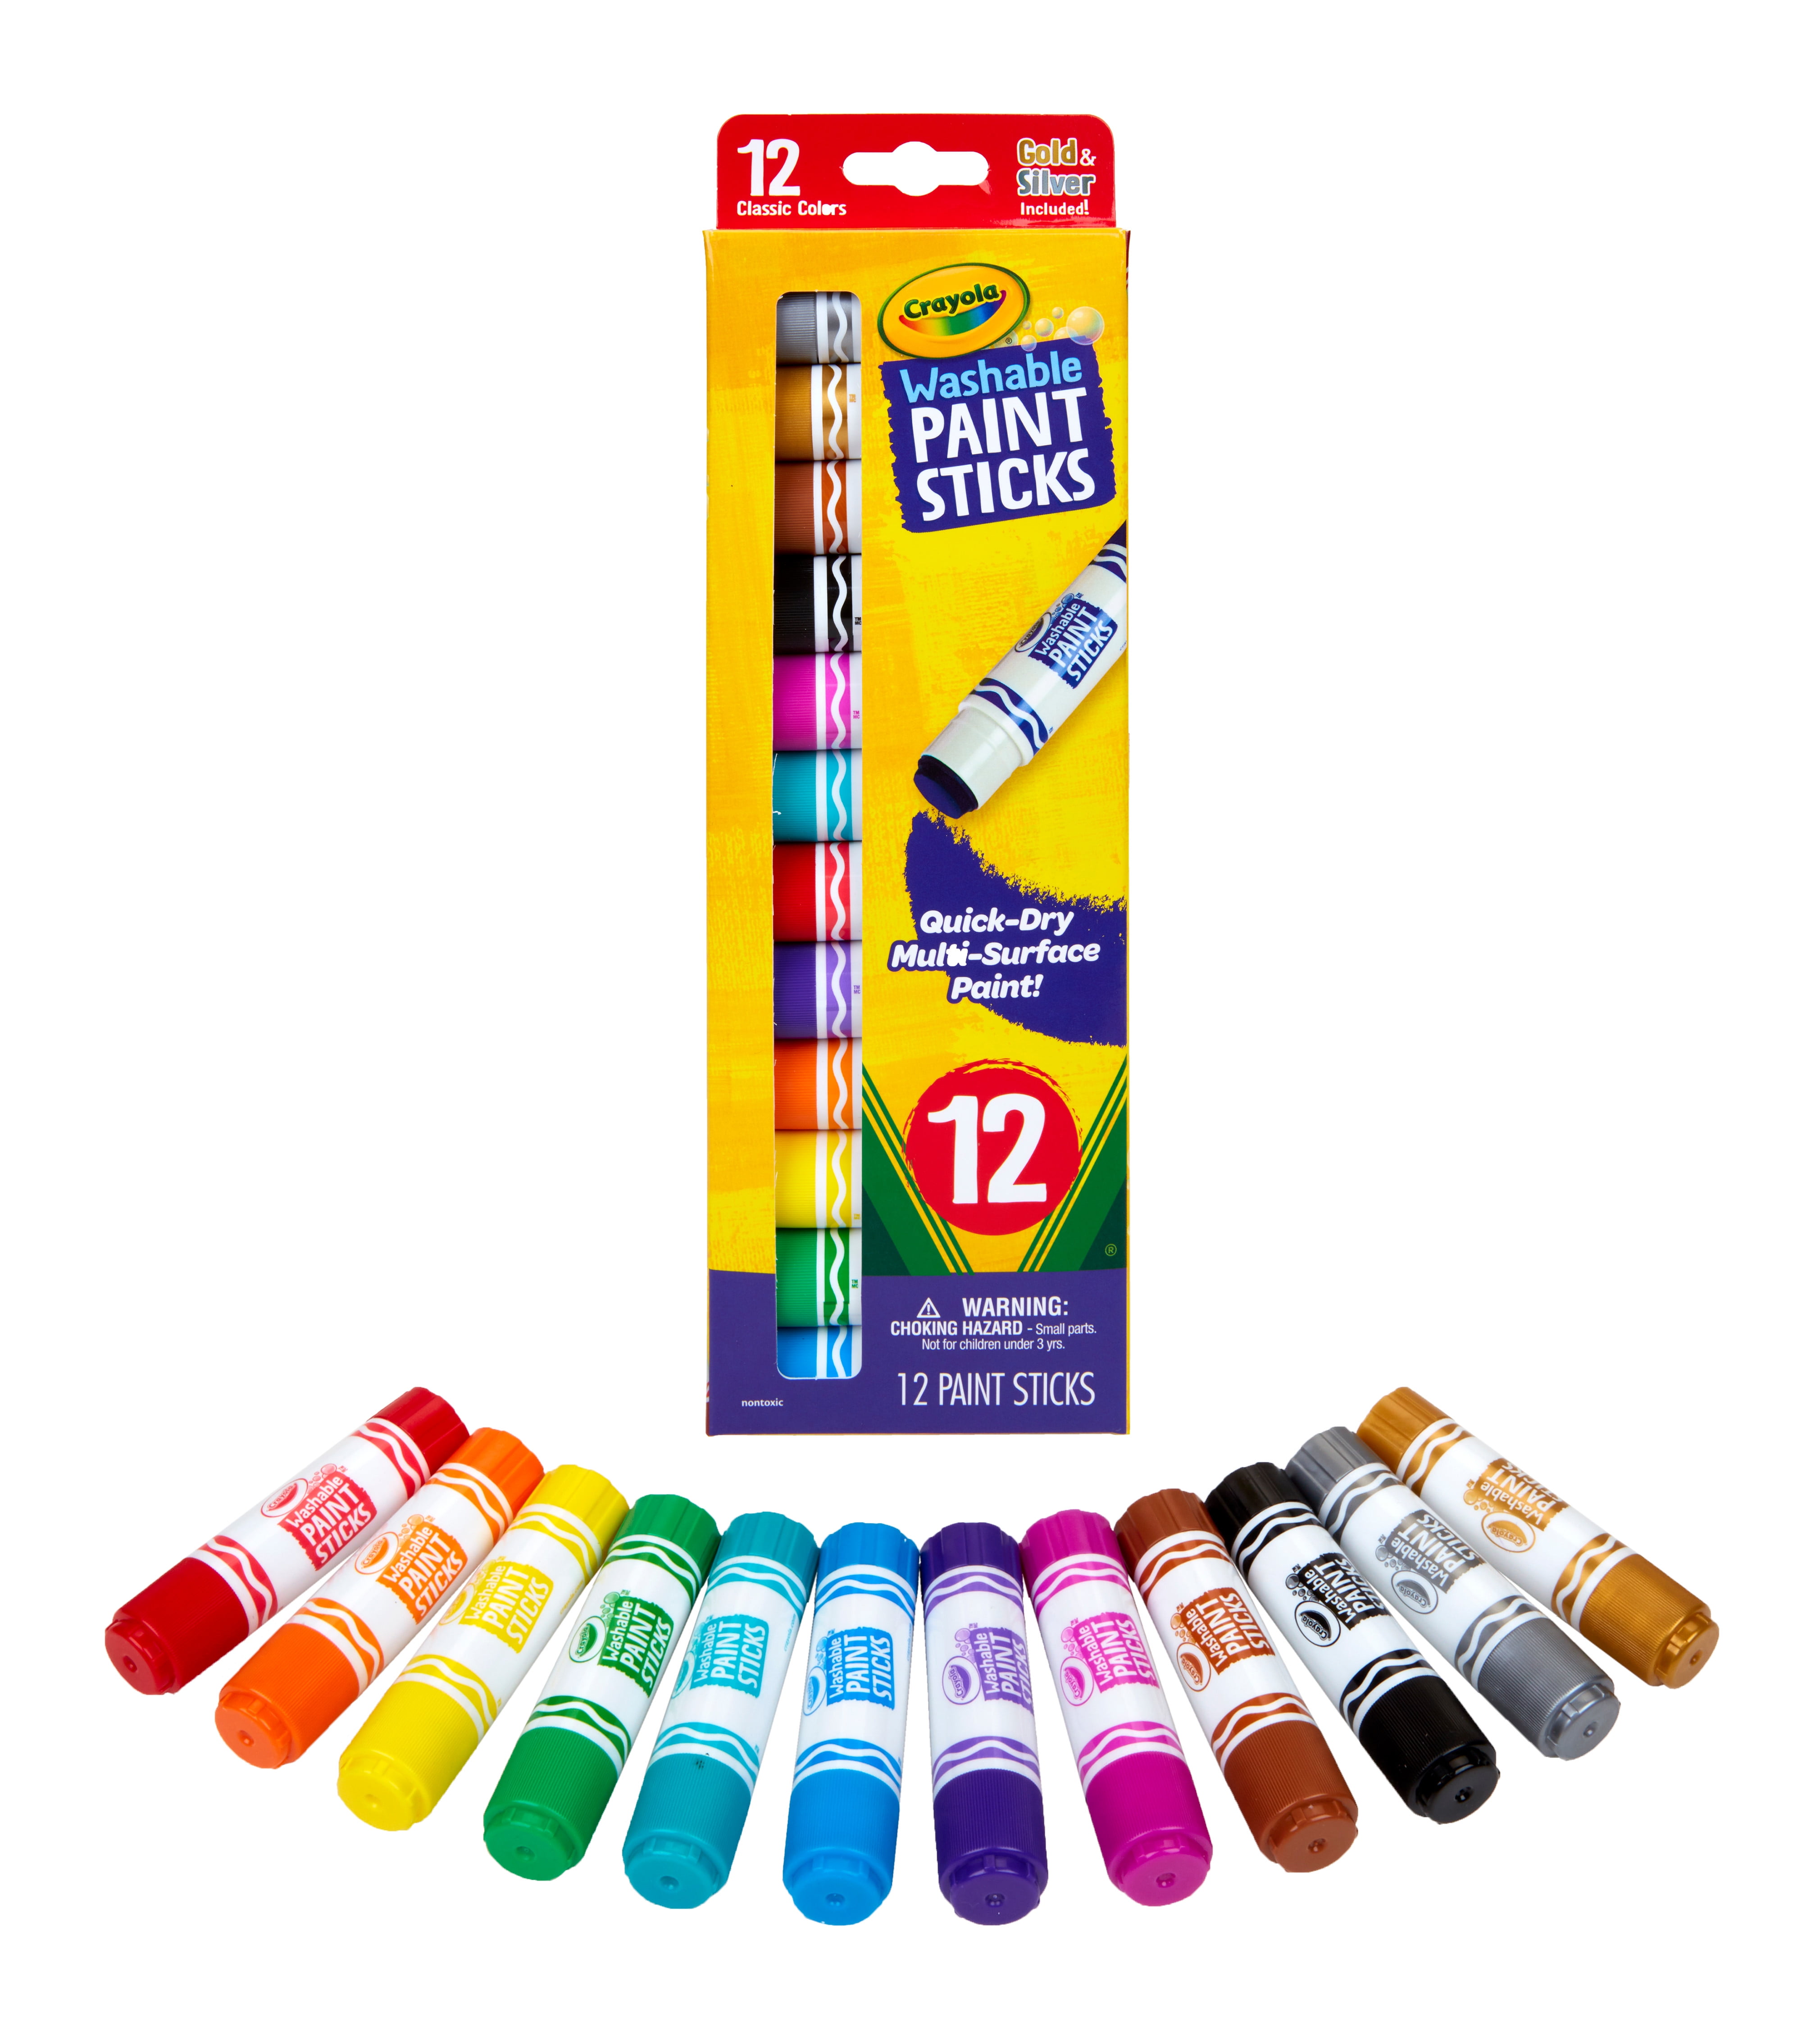 Washable Paint Set for Kids, 50+ Pieces, Crayola.com